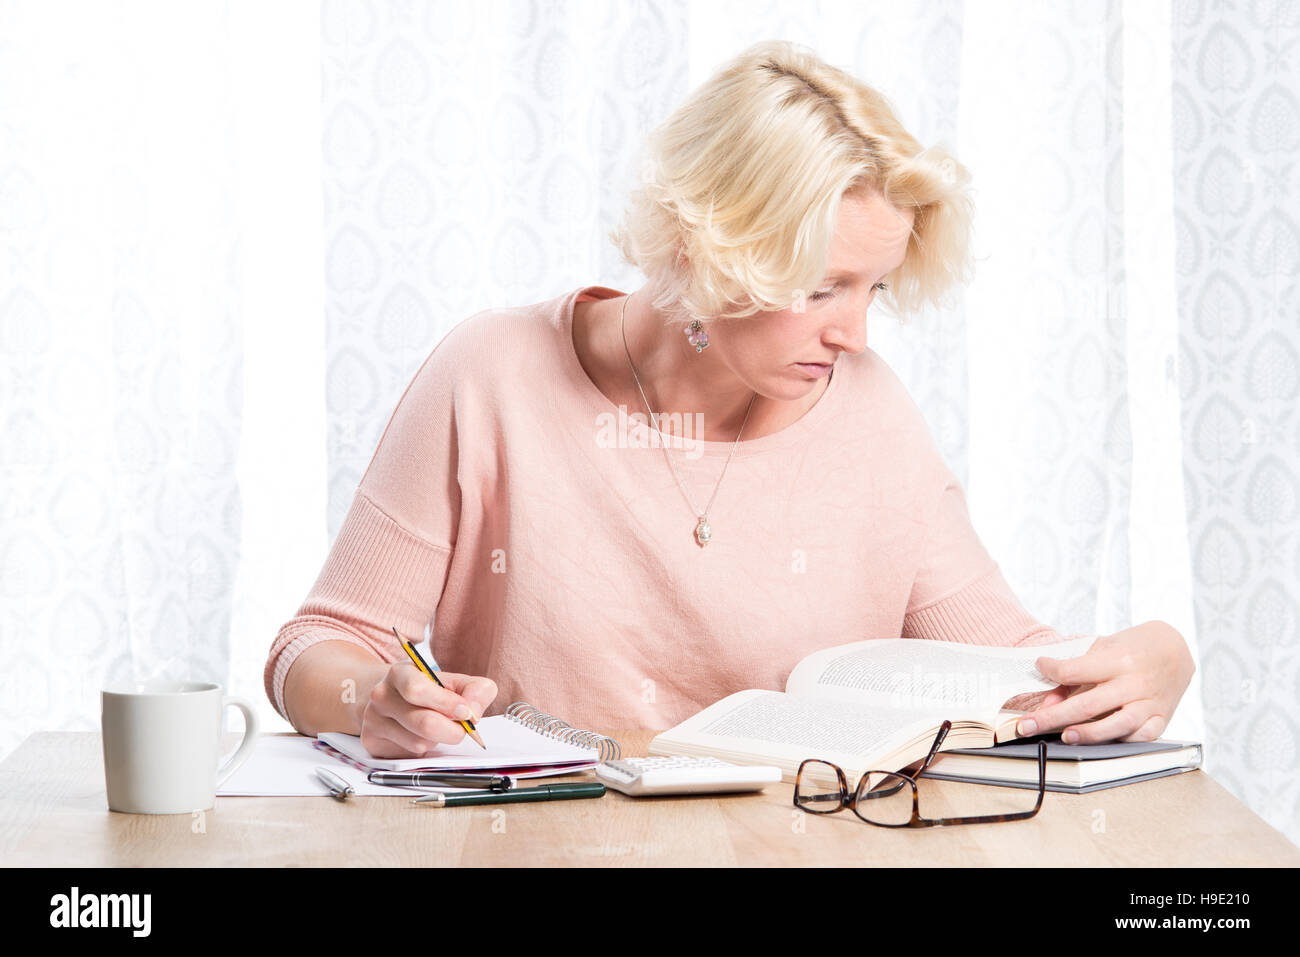 Une femme blonde vêtue d'une légère cavalier rose avec collier étudie un livre tout en écrivant dans un tampon avec un crayon. Elle s'assoit à une table en bois en Banque D'Images